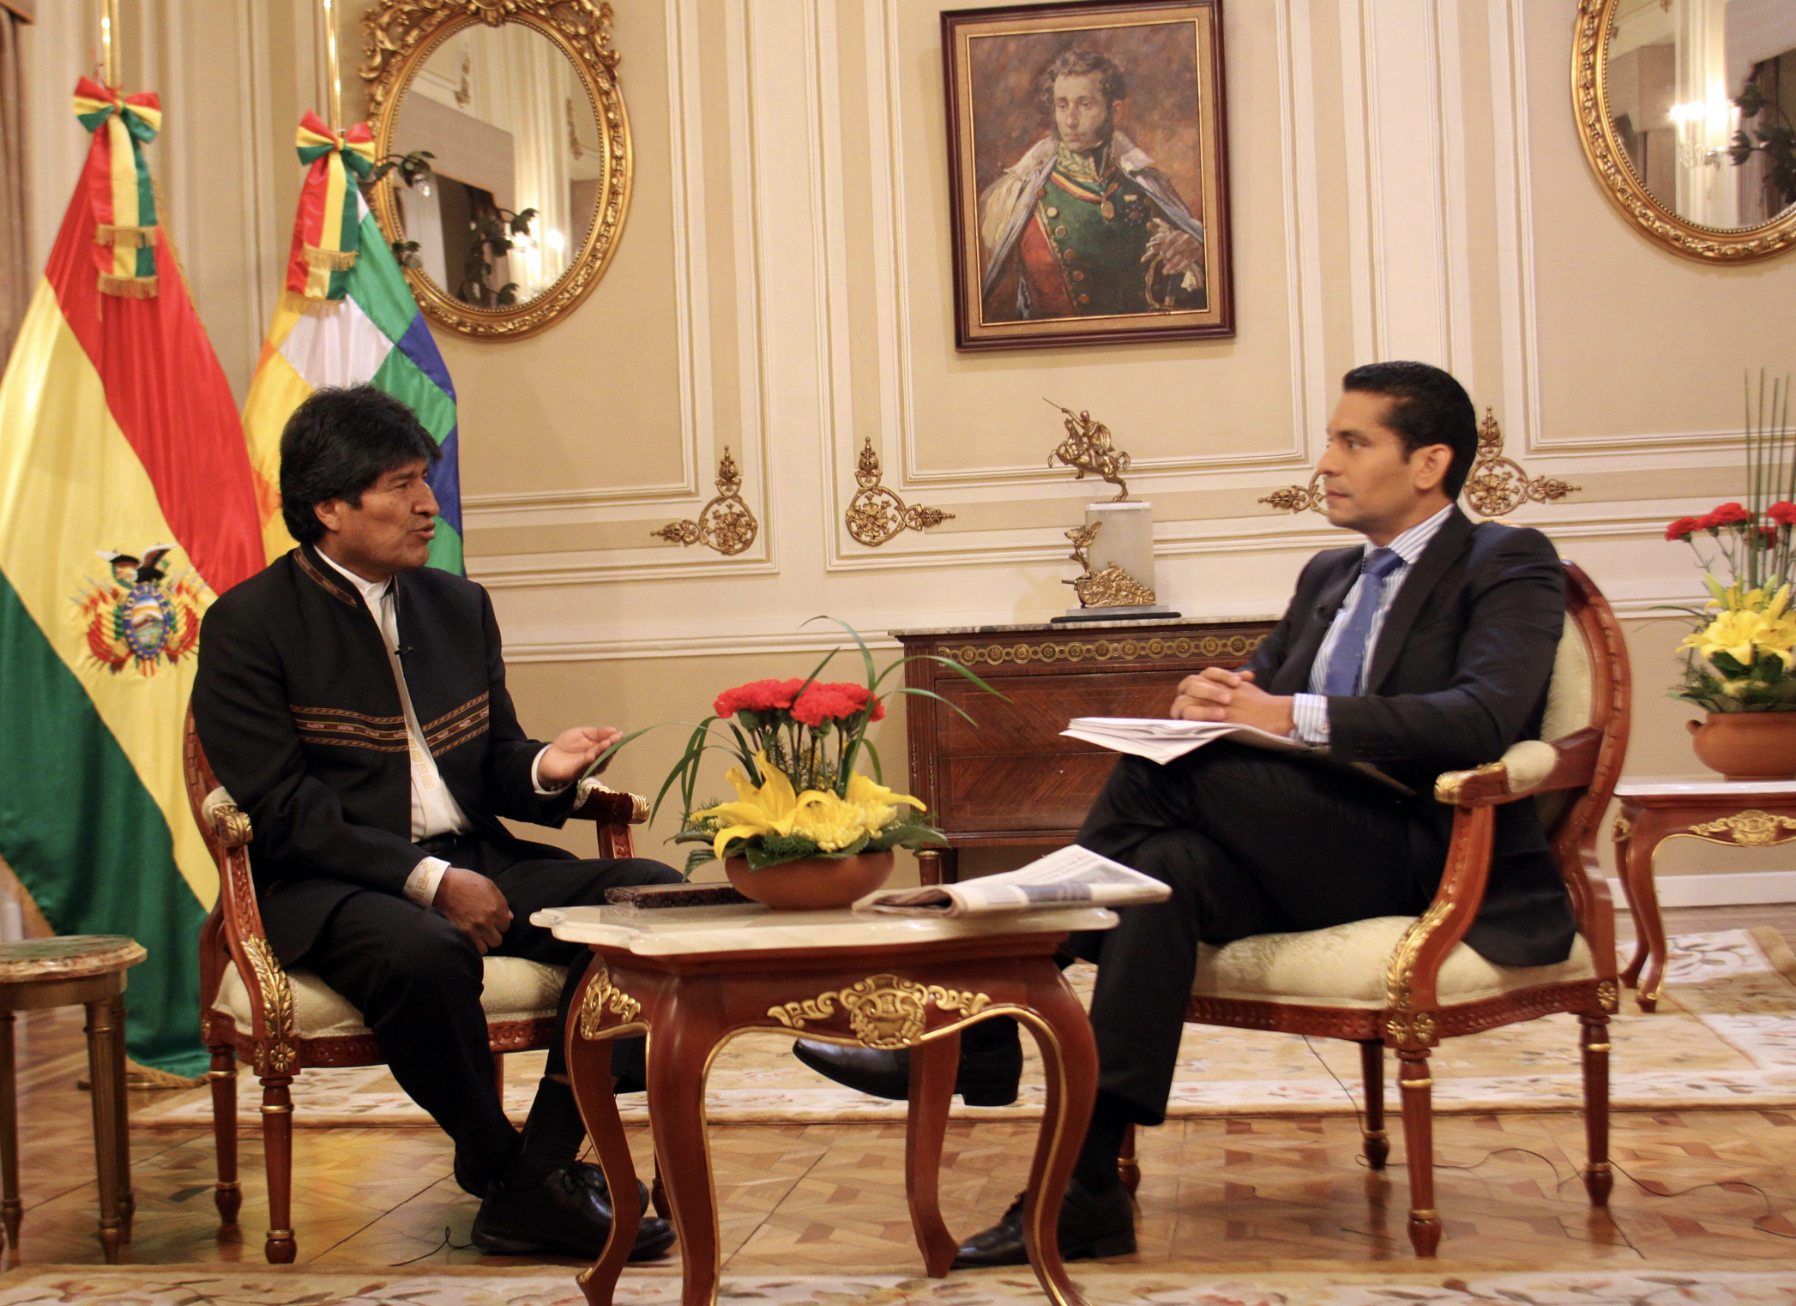 El Presidente De Bolivia Evo Morales Llama Gusano Cubano A Ismael Cala Y El Periodista Le Responde